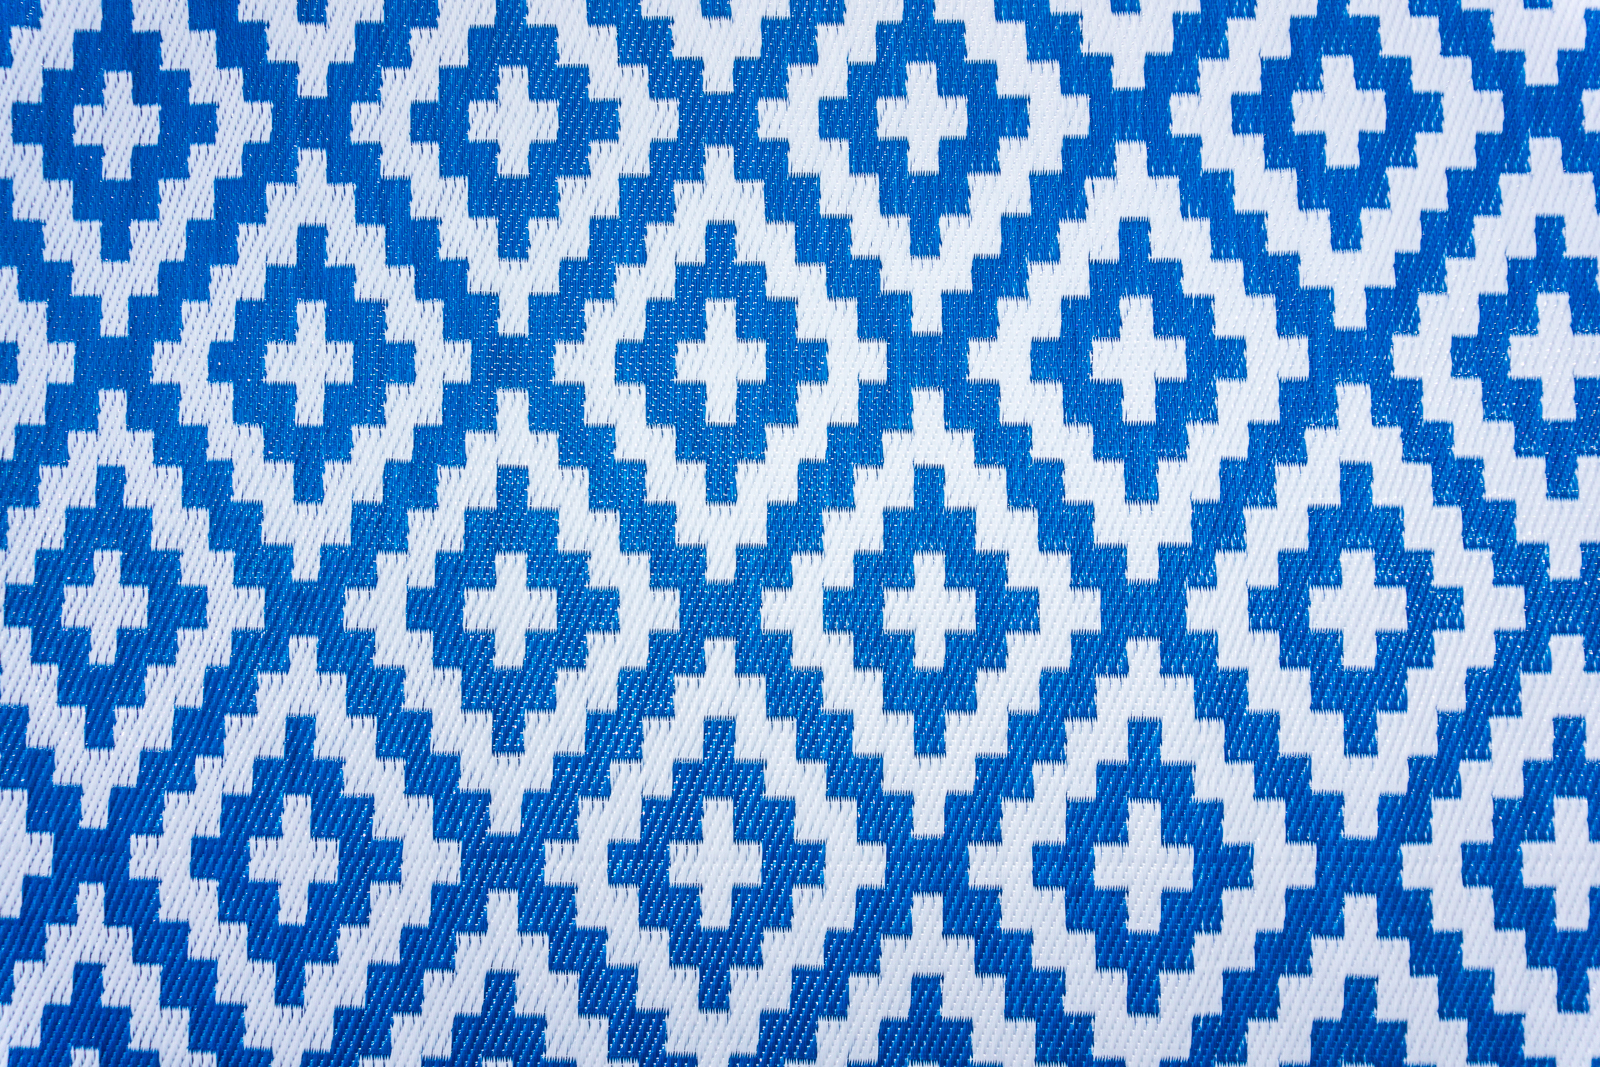 Garten Kunststoffteppich Austin blau 120x180cm